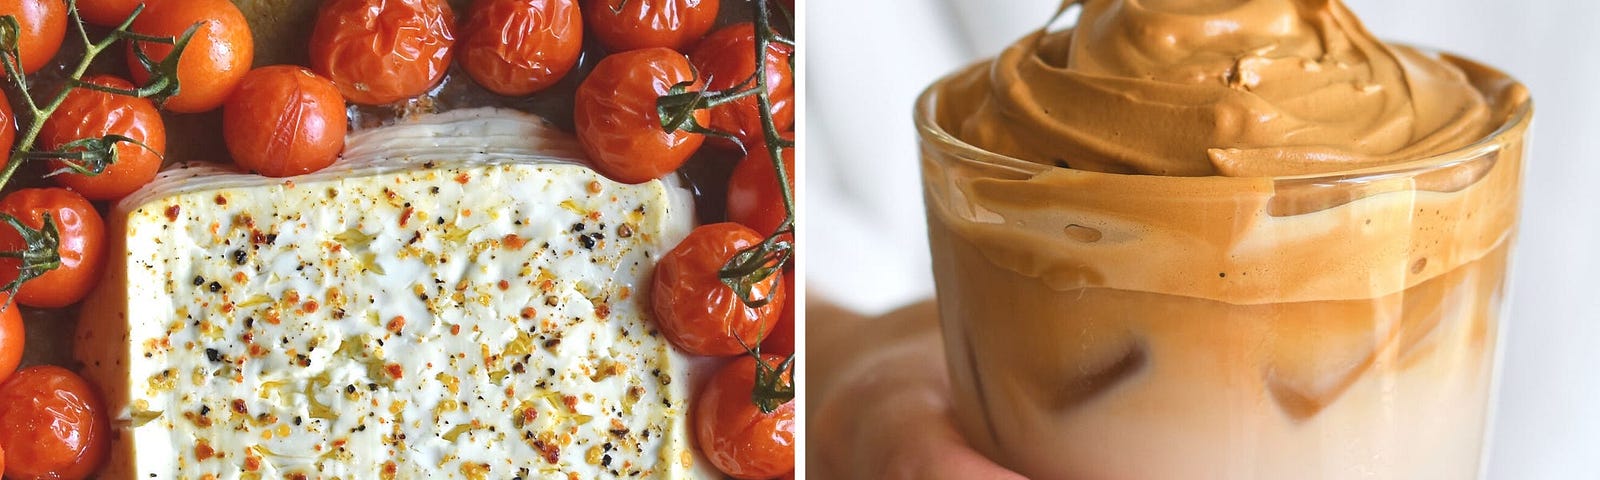 Tomato and feta (left) and Dalgona coffee (right).